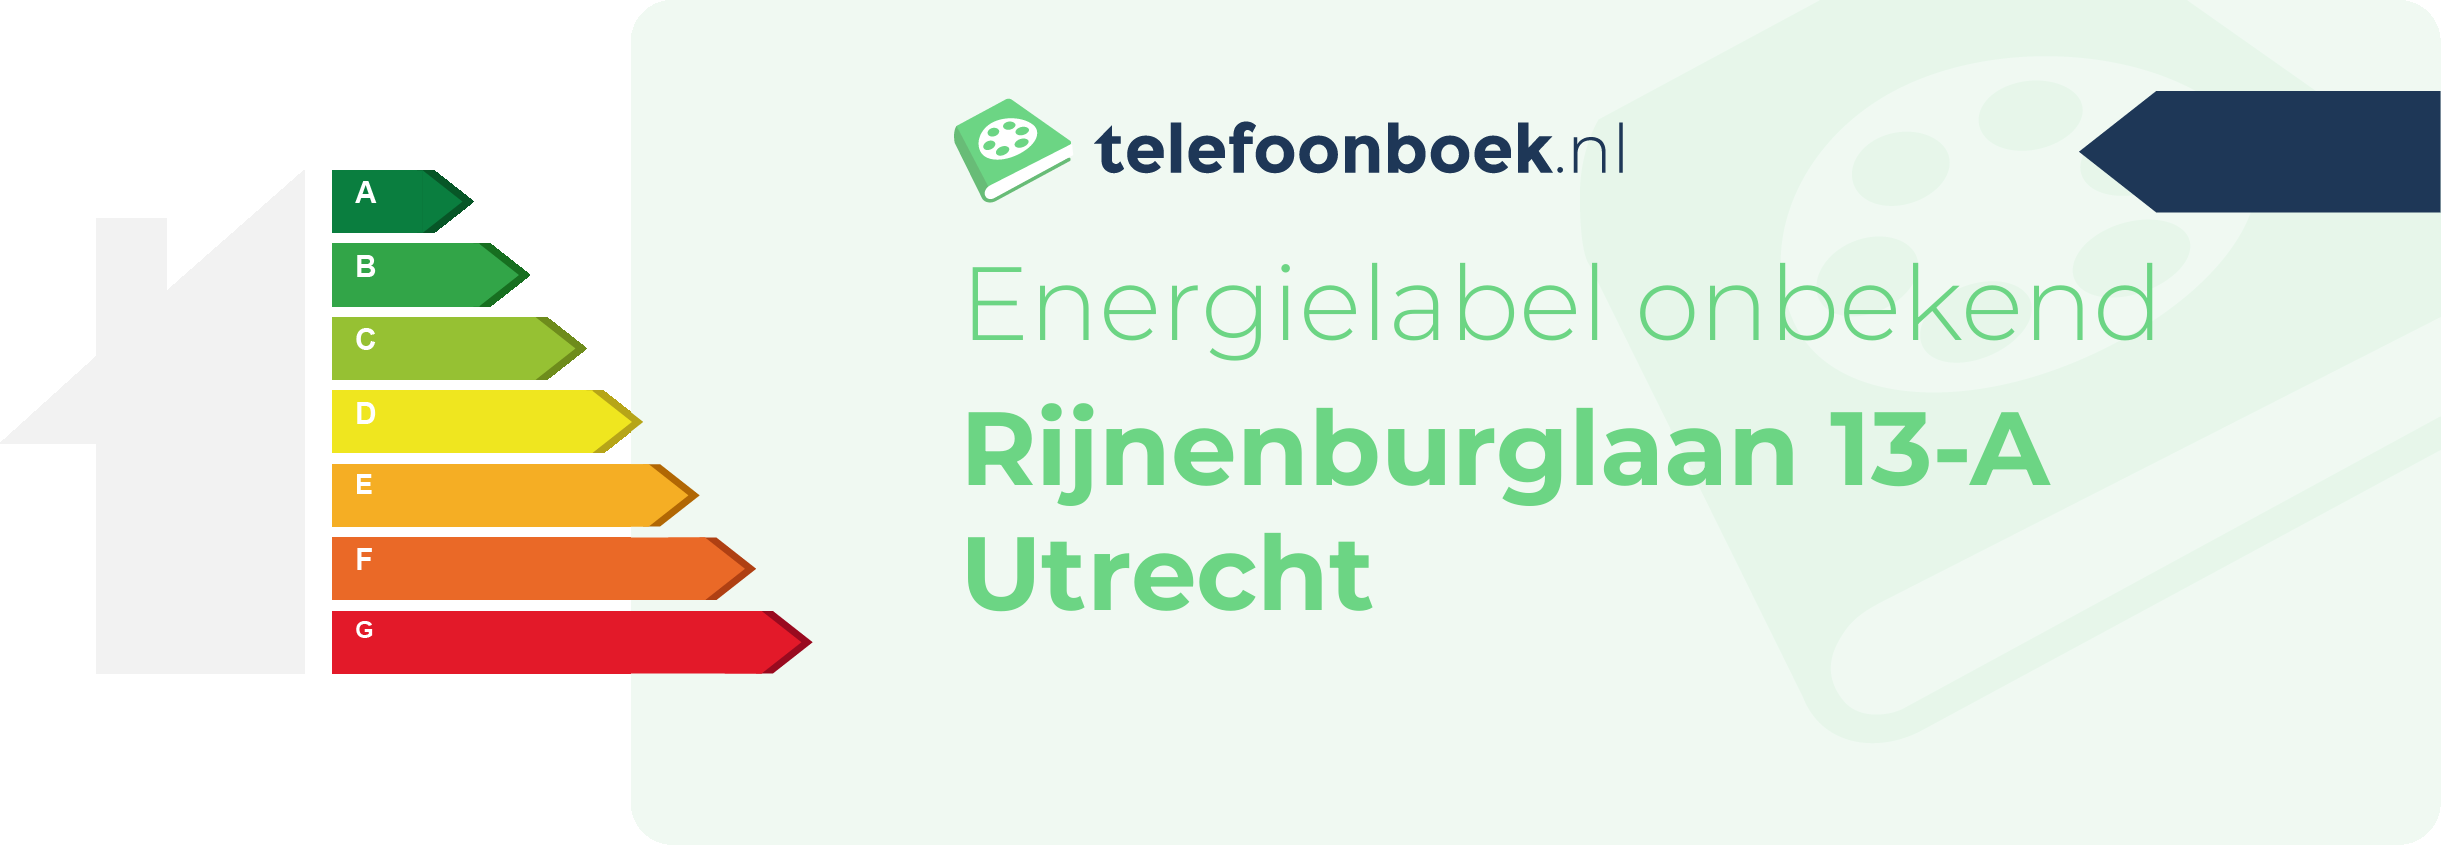 Energielabel Rijnenburglaan 13-A Utrecht